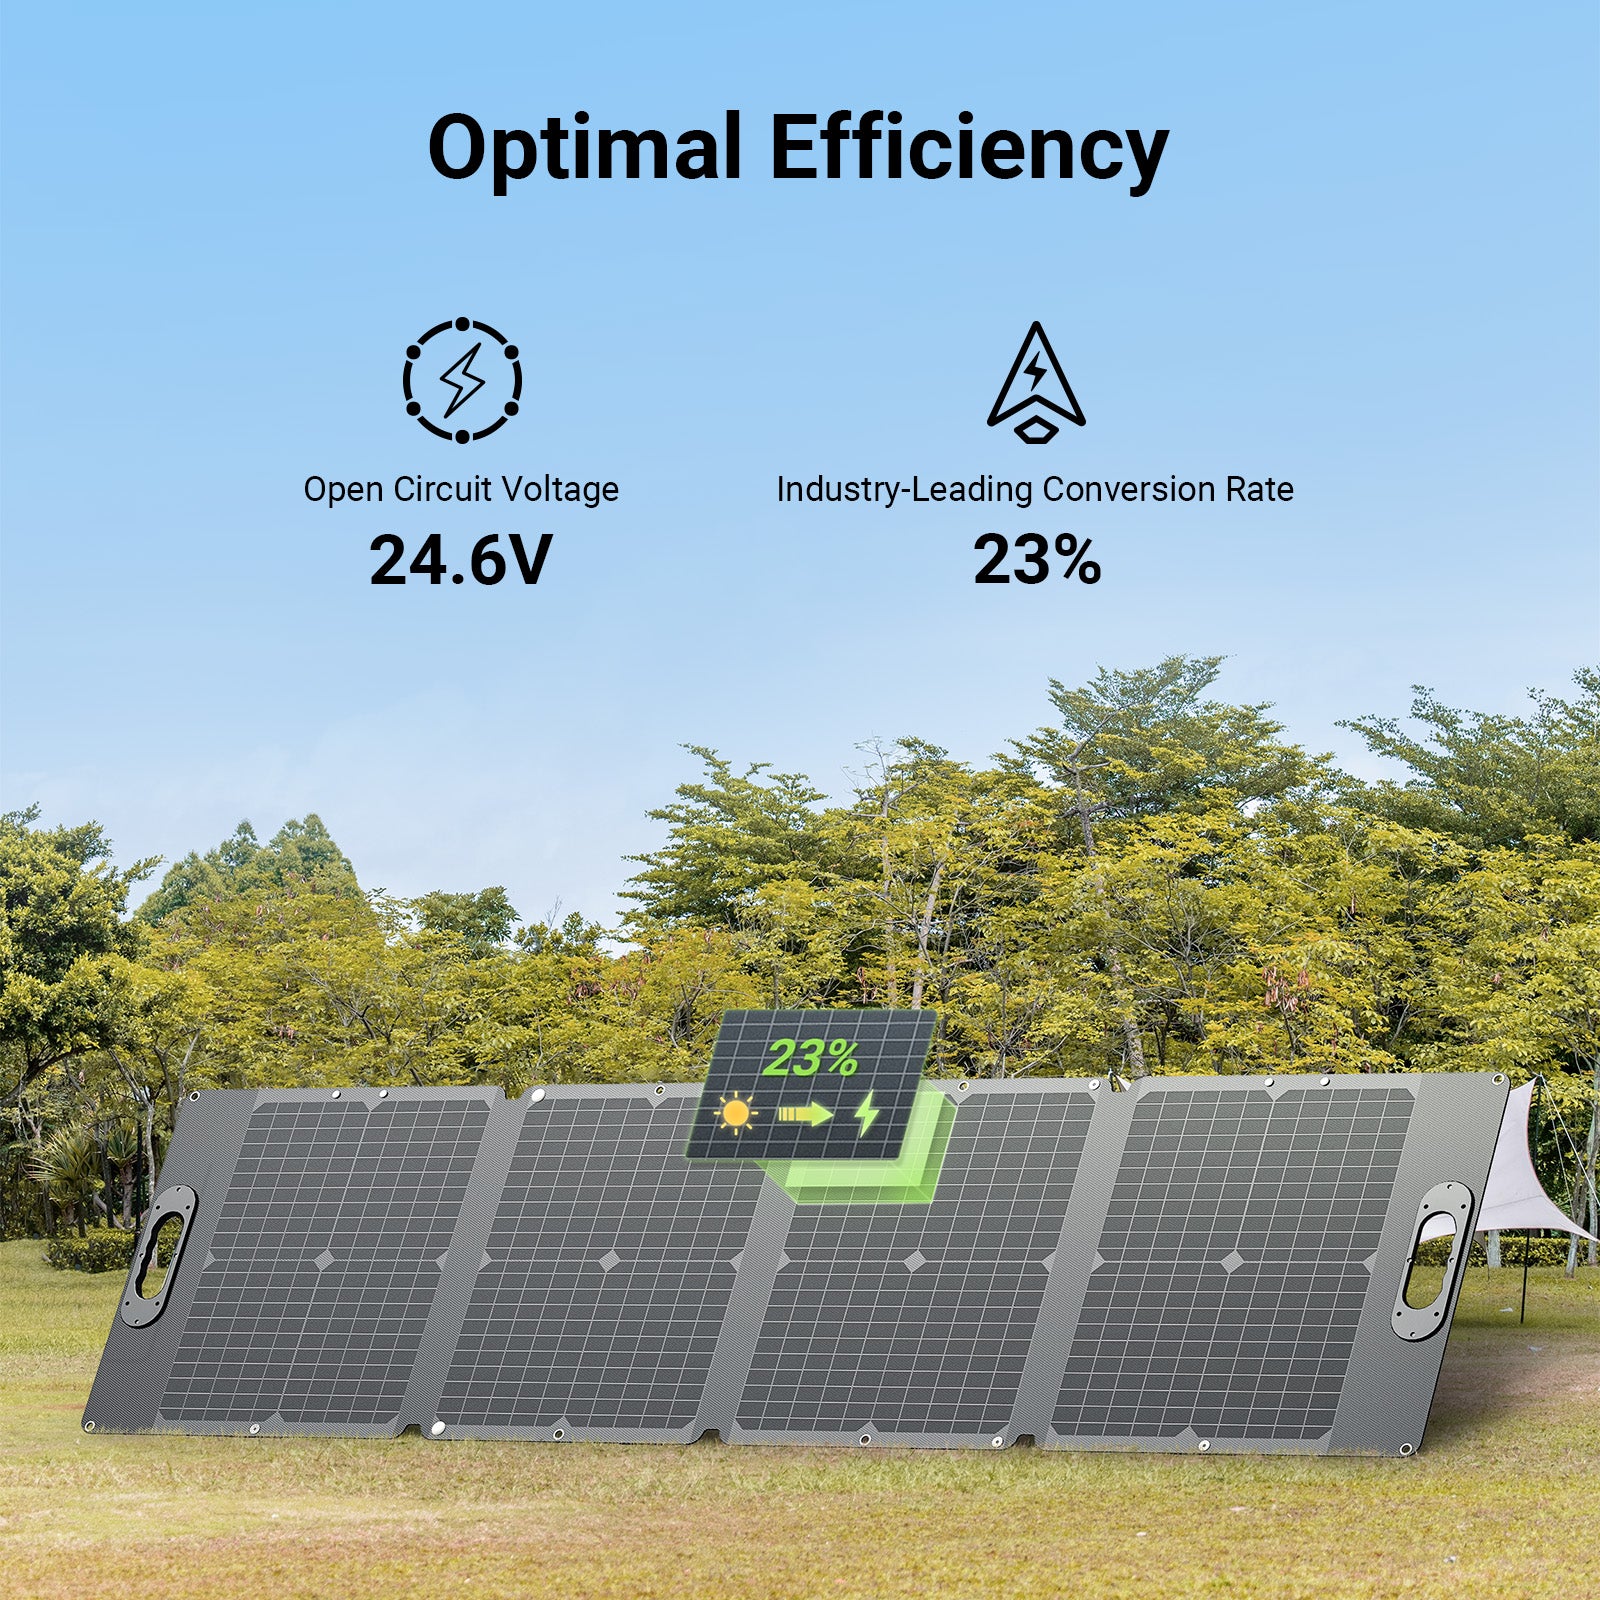 DBS120S Tragbares Solarpanel für Kraftwerk | 120W